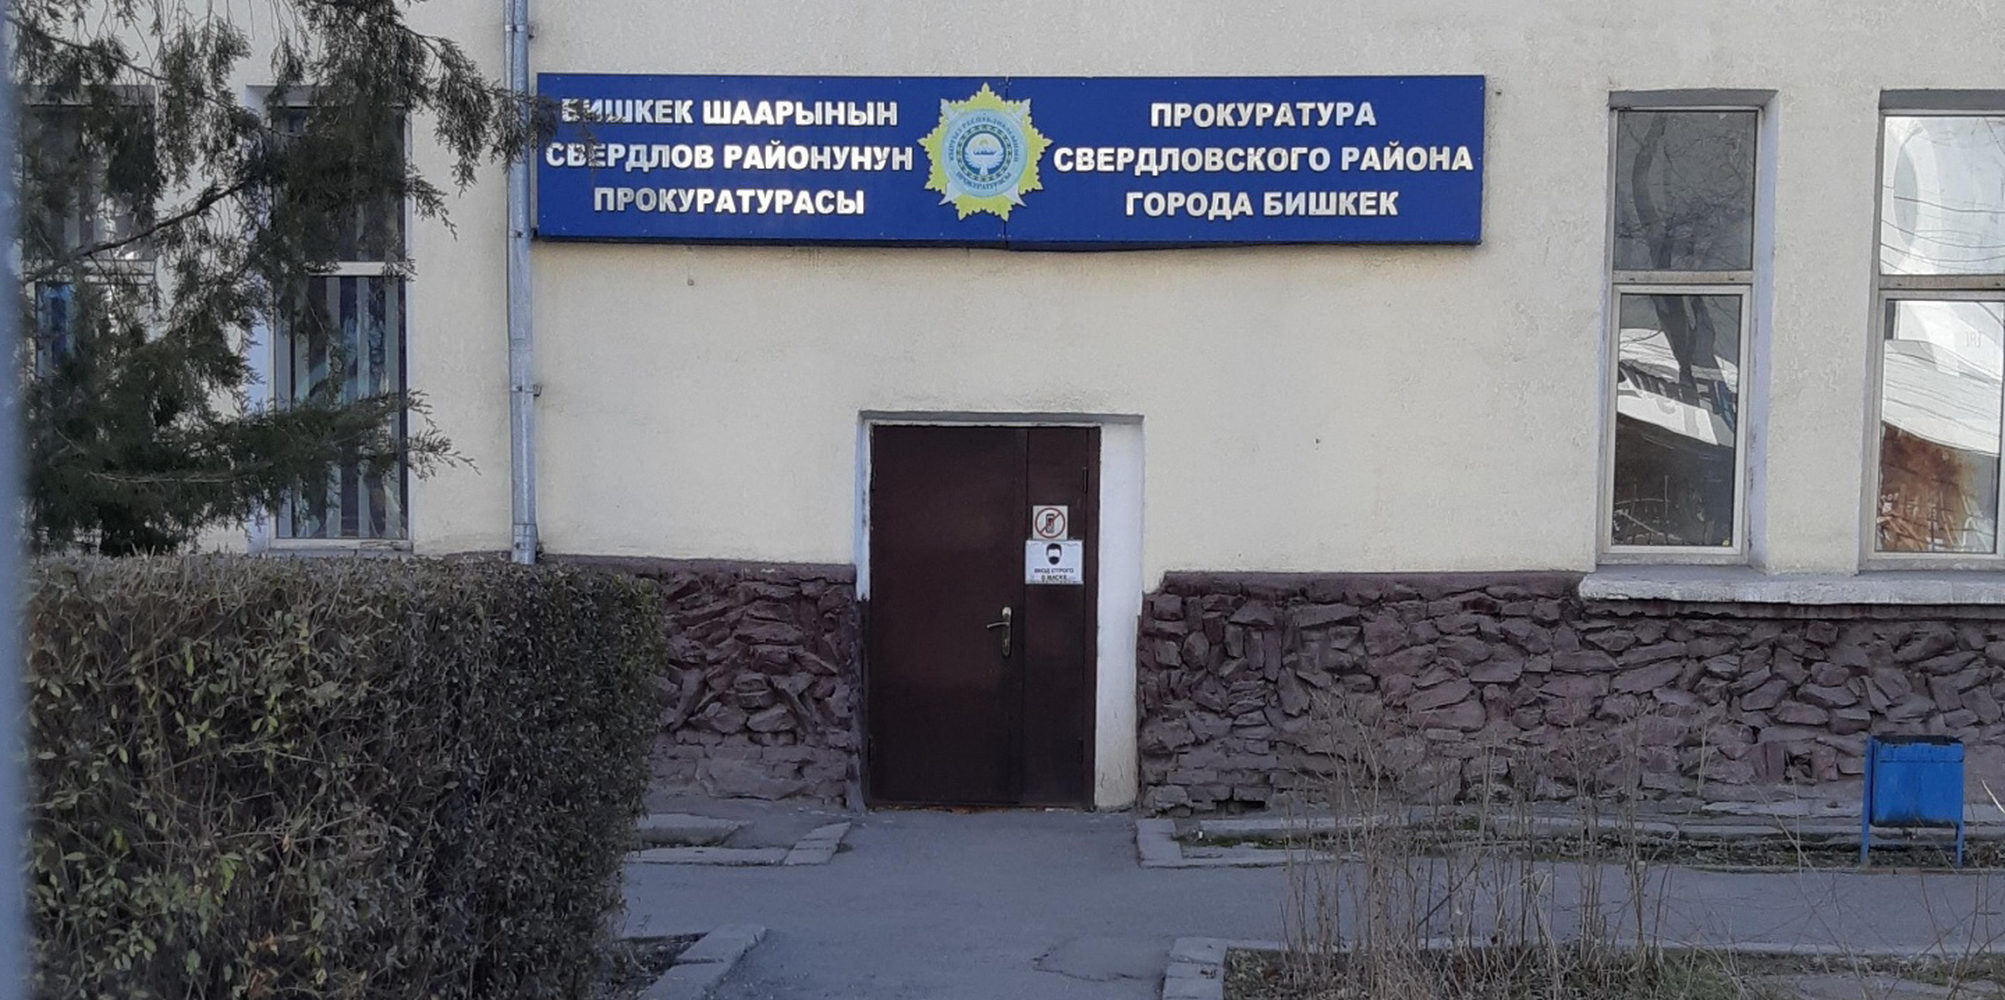 В Сведловском районе Бишкека преобладают преступления против личности — Today.kg